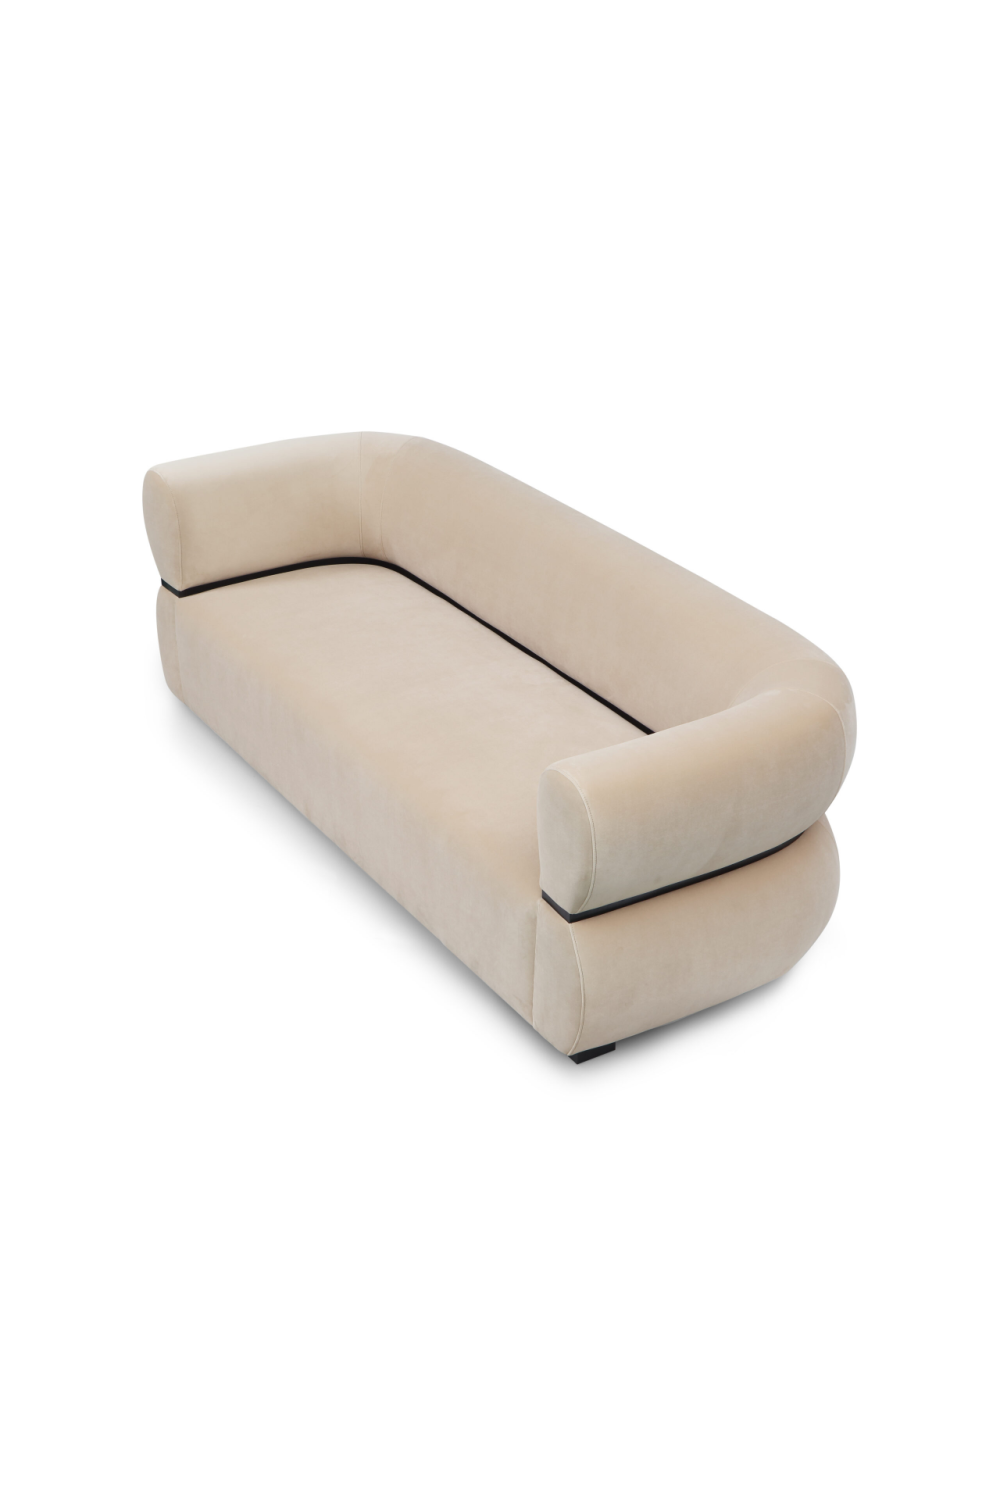 Beige Velvet Curved Sofa | Liang & Eimil Volta | Oroa.com